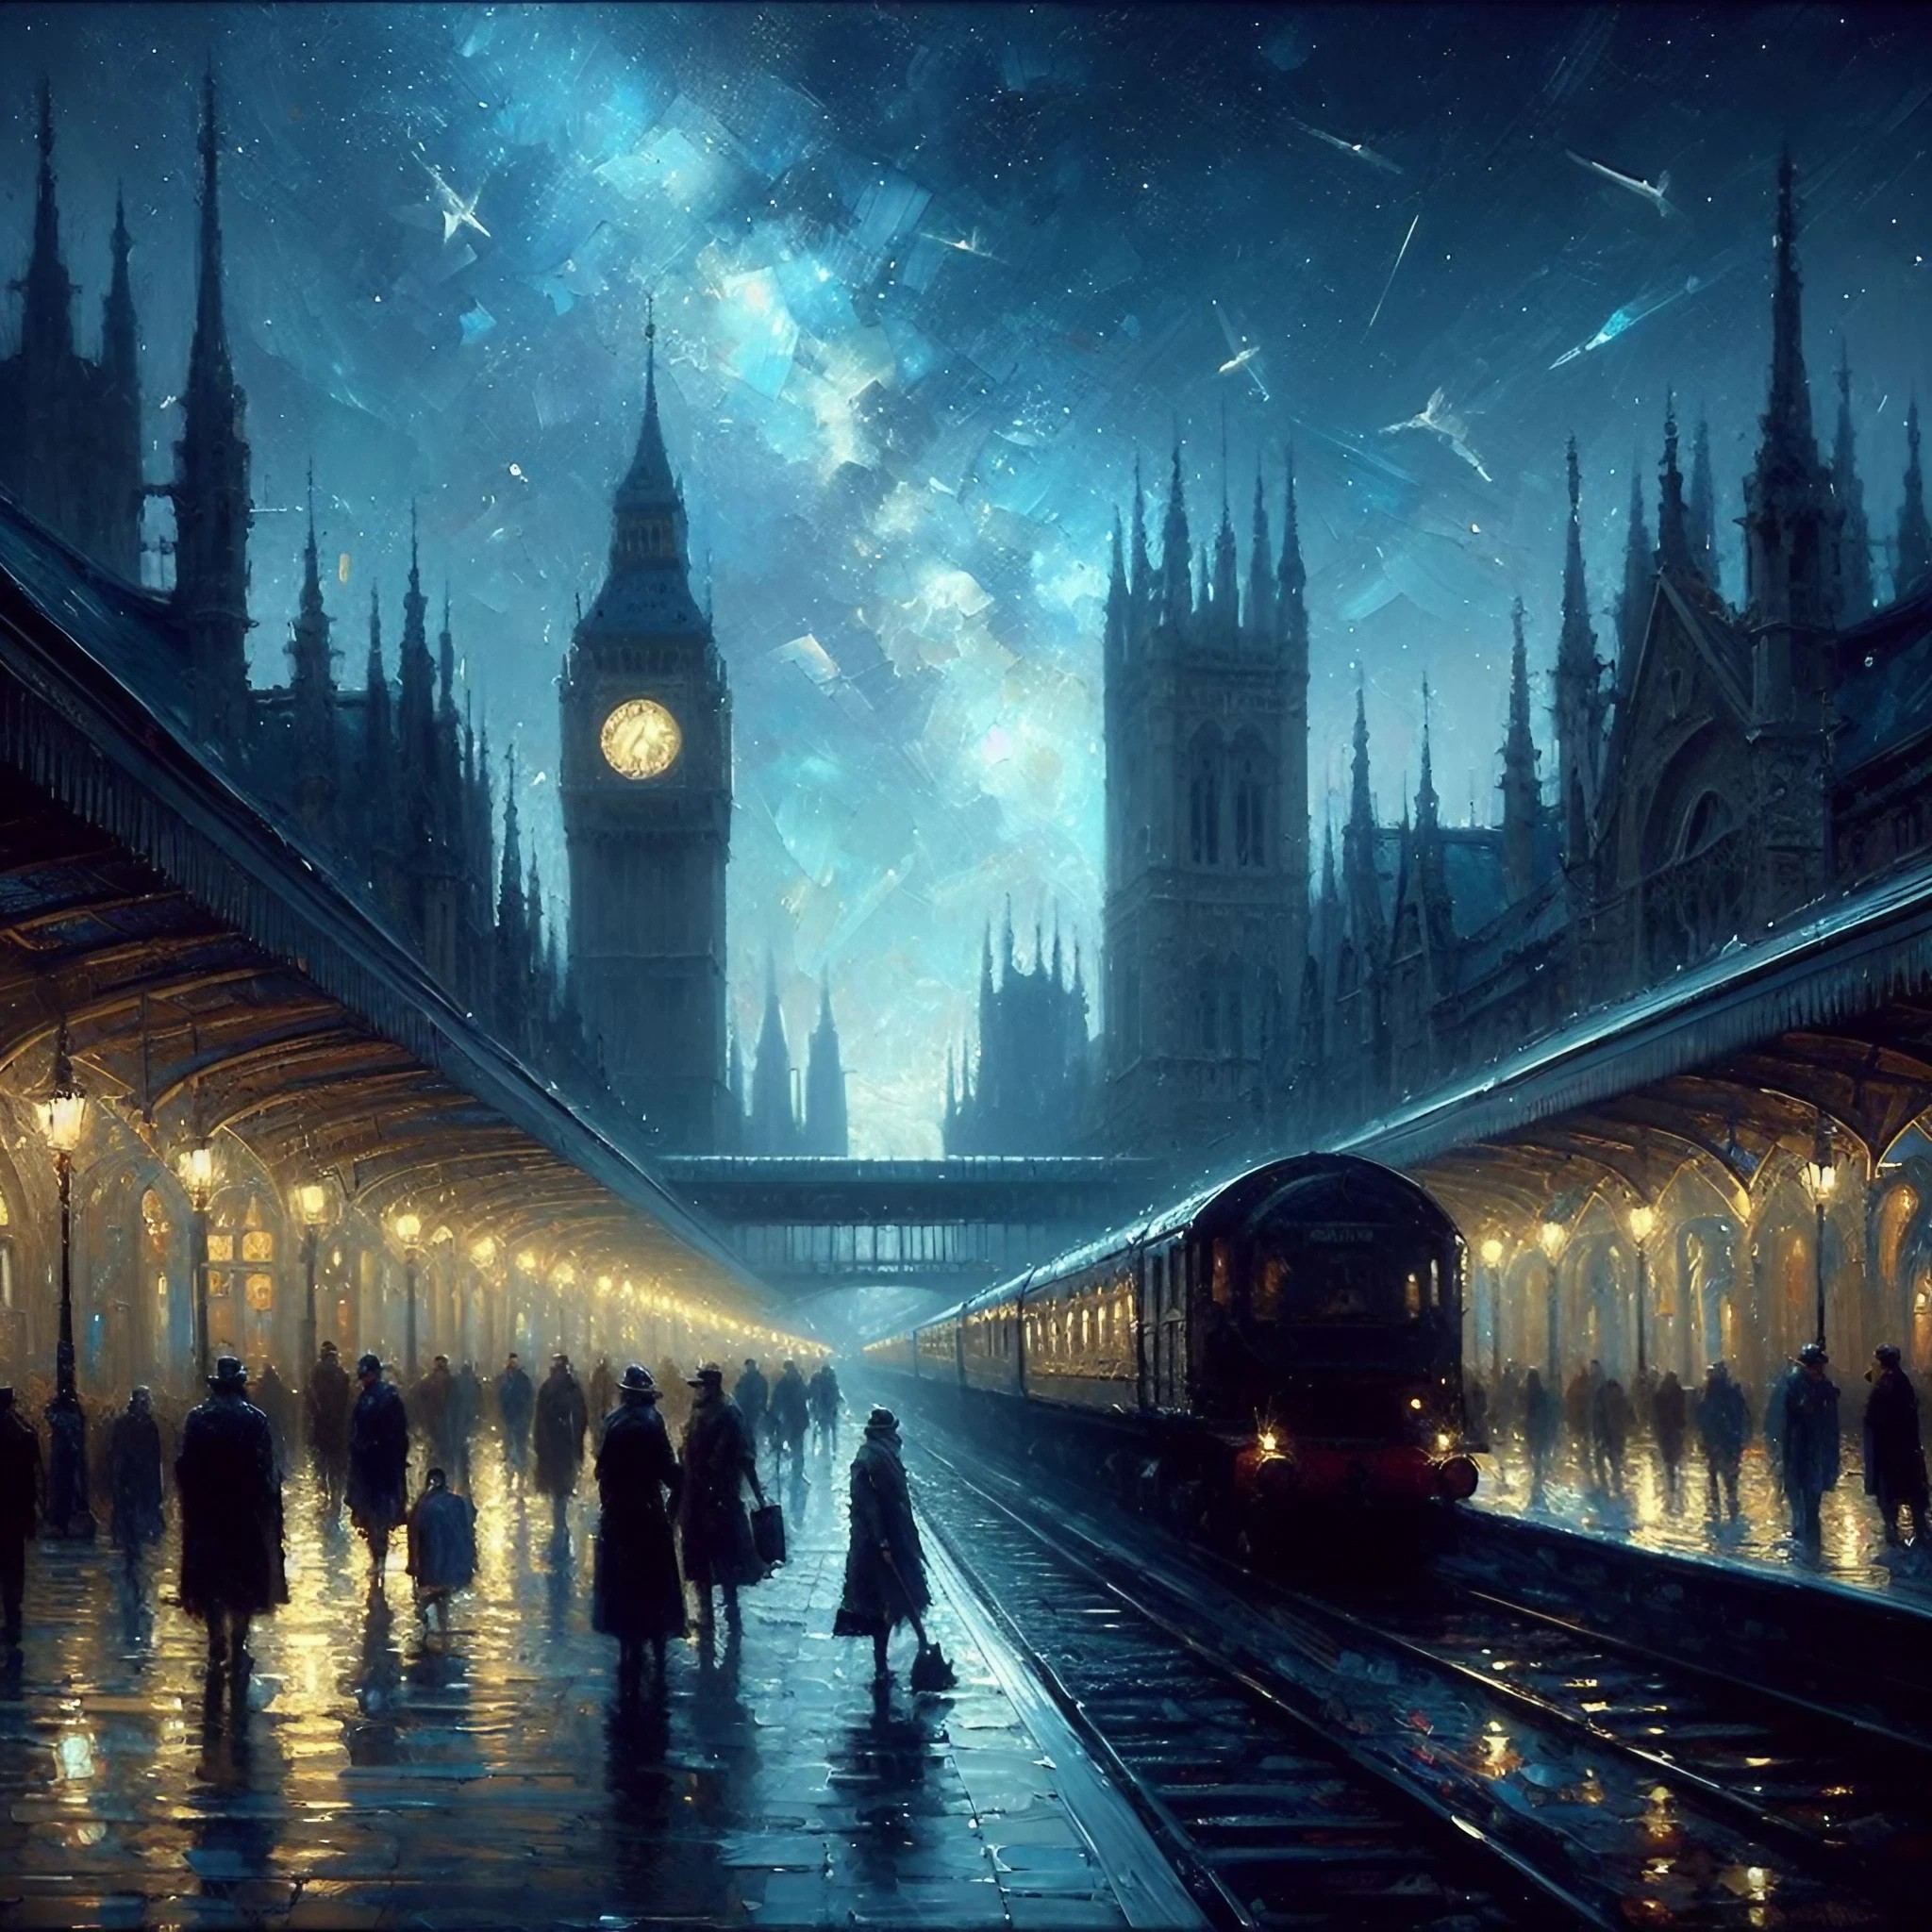 美しい夜空と星のヨーロッパの駅＆天の川に輝く時計台と列車の癒しの風景の無料イラスト画像素材